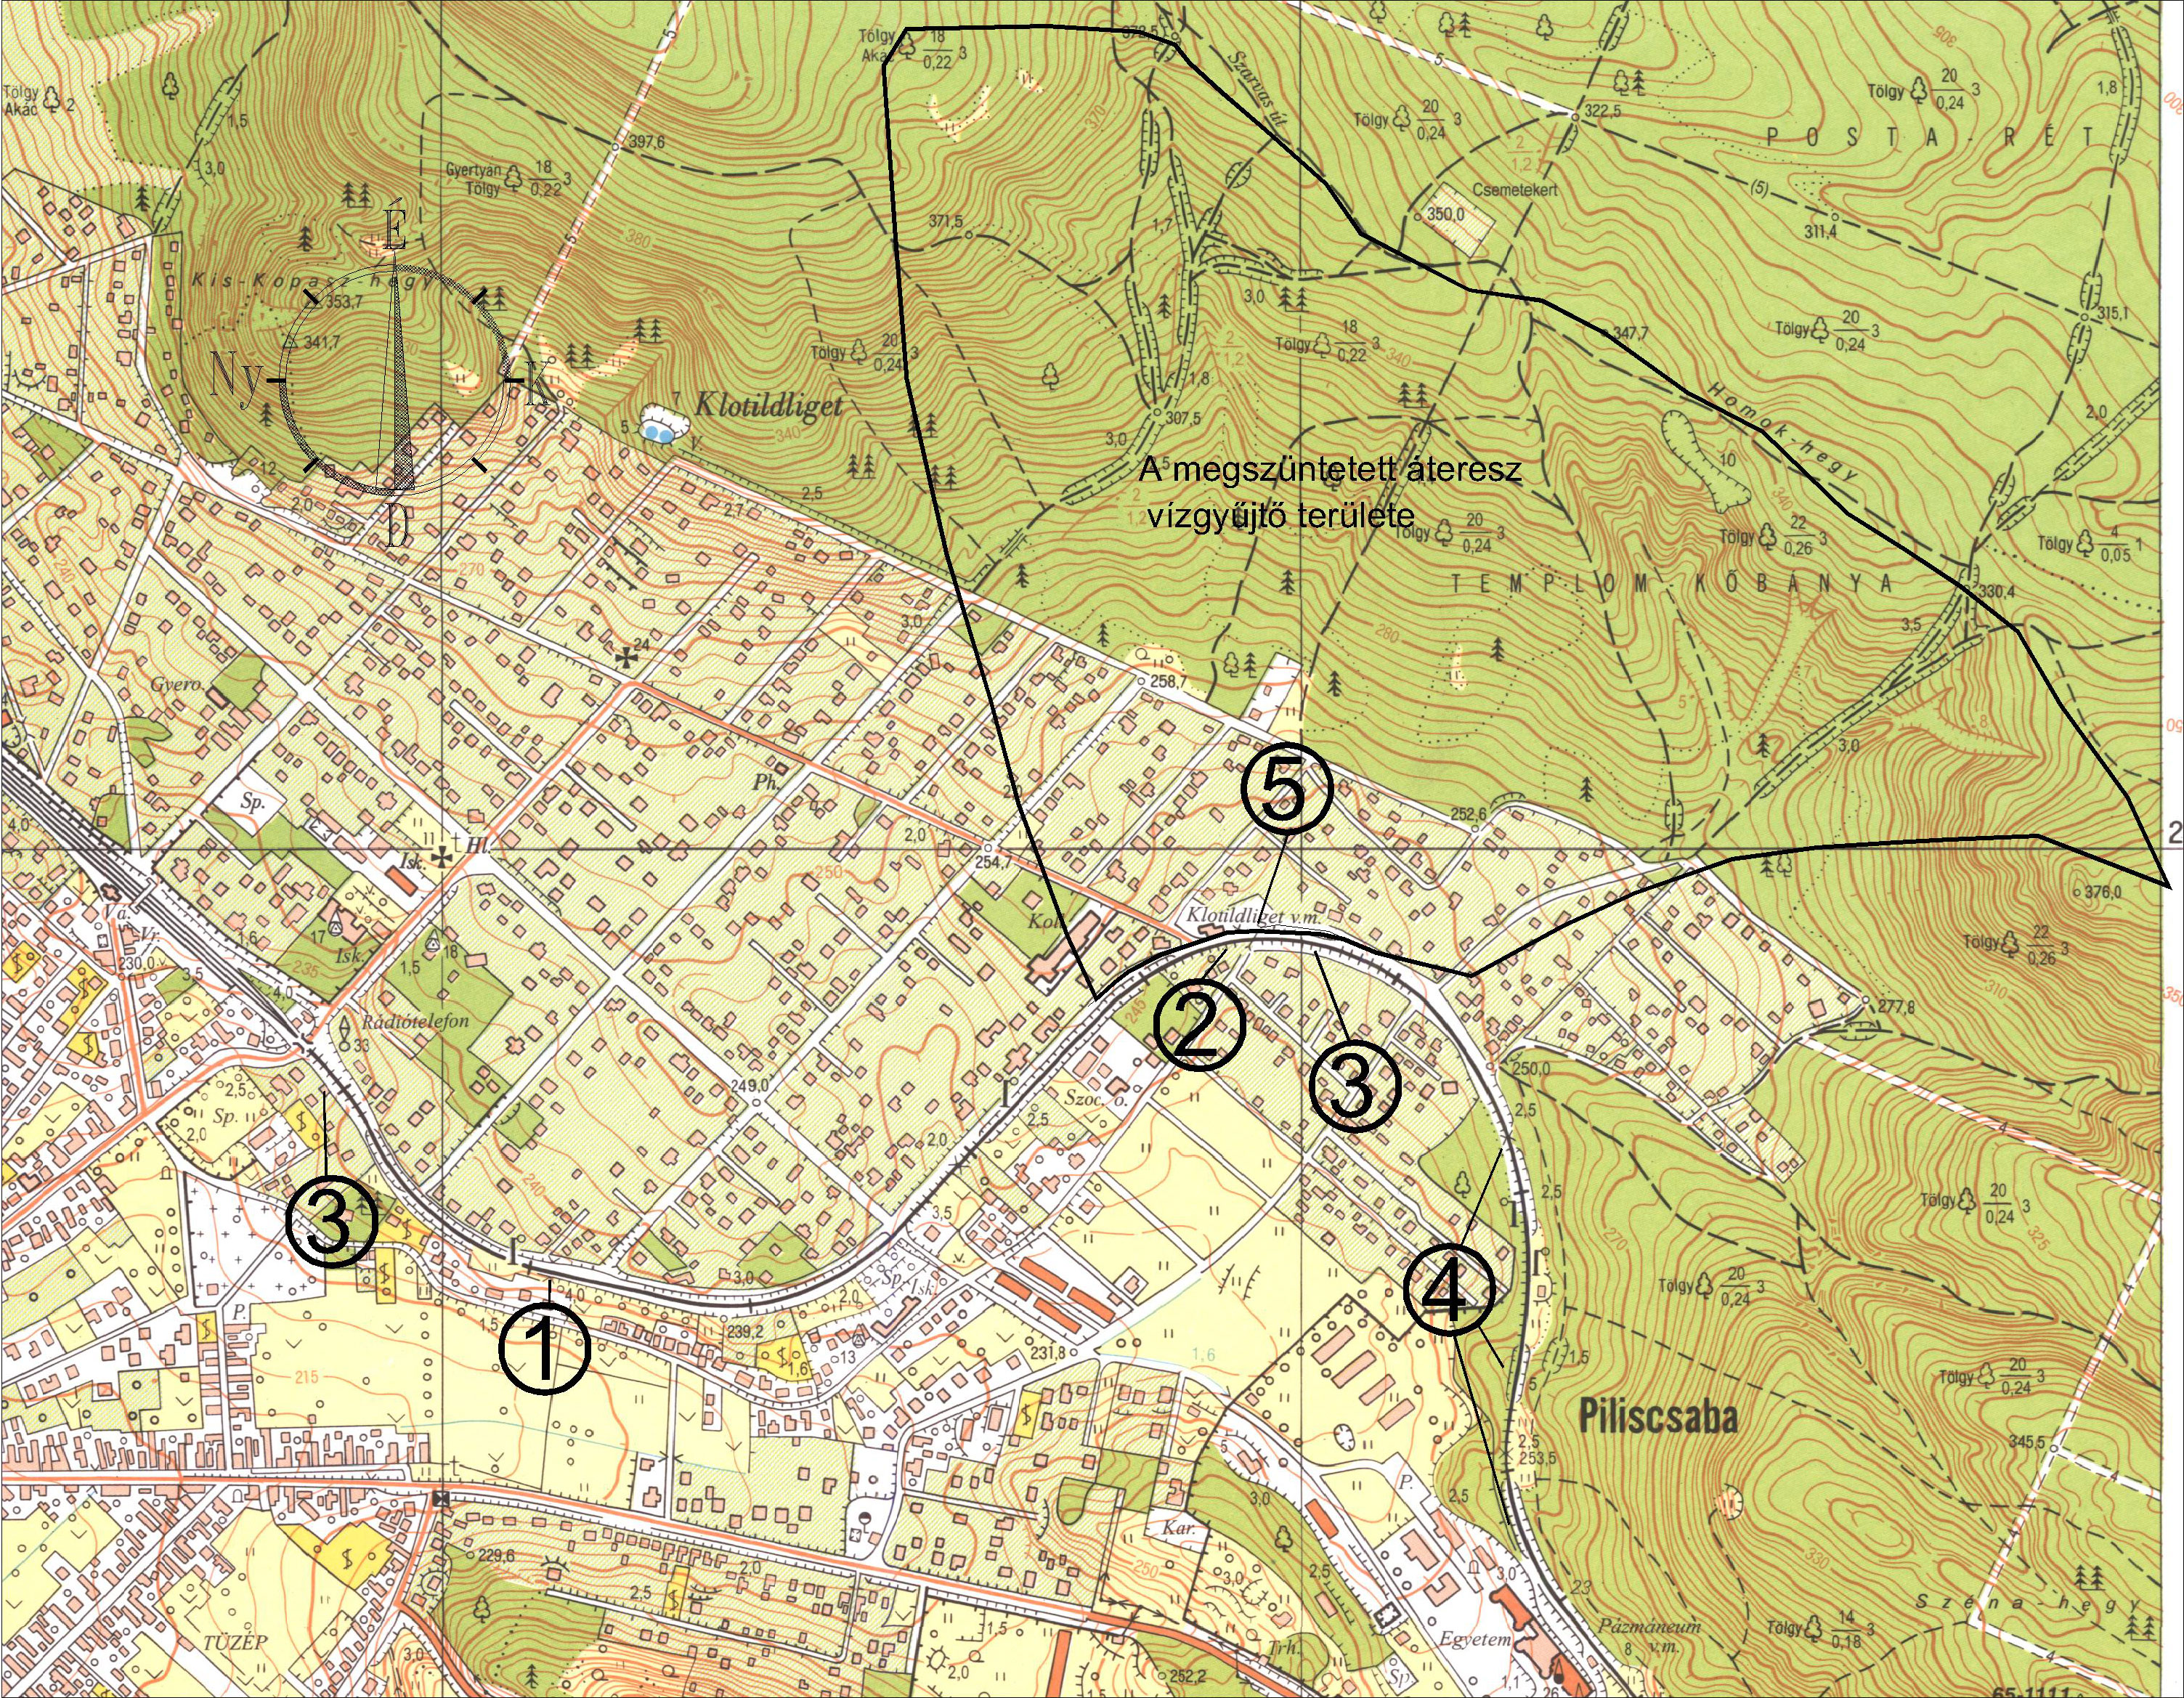 piliscsaba térkép Vasútfejlesztés   Piliscsabai szakasz   vízügyi problémák   CIVILHETES piliscsaba térkép